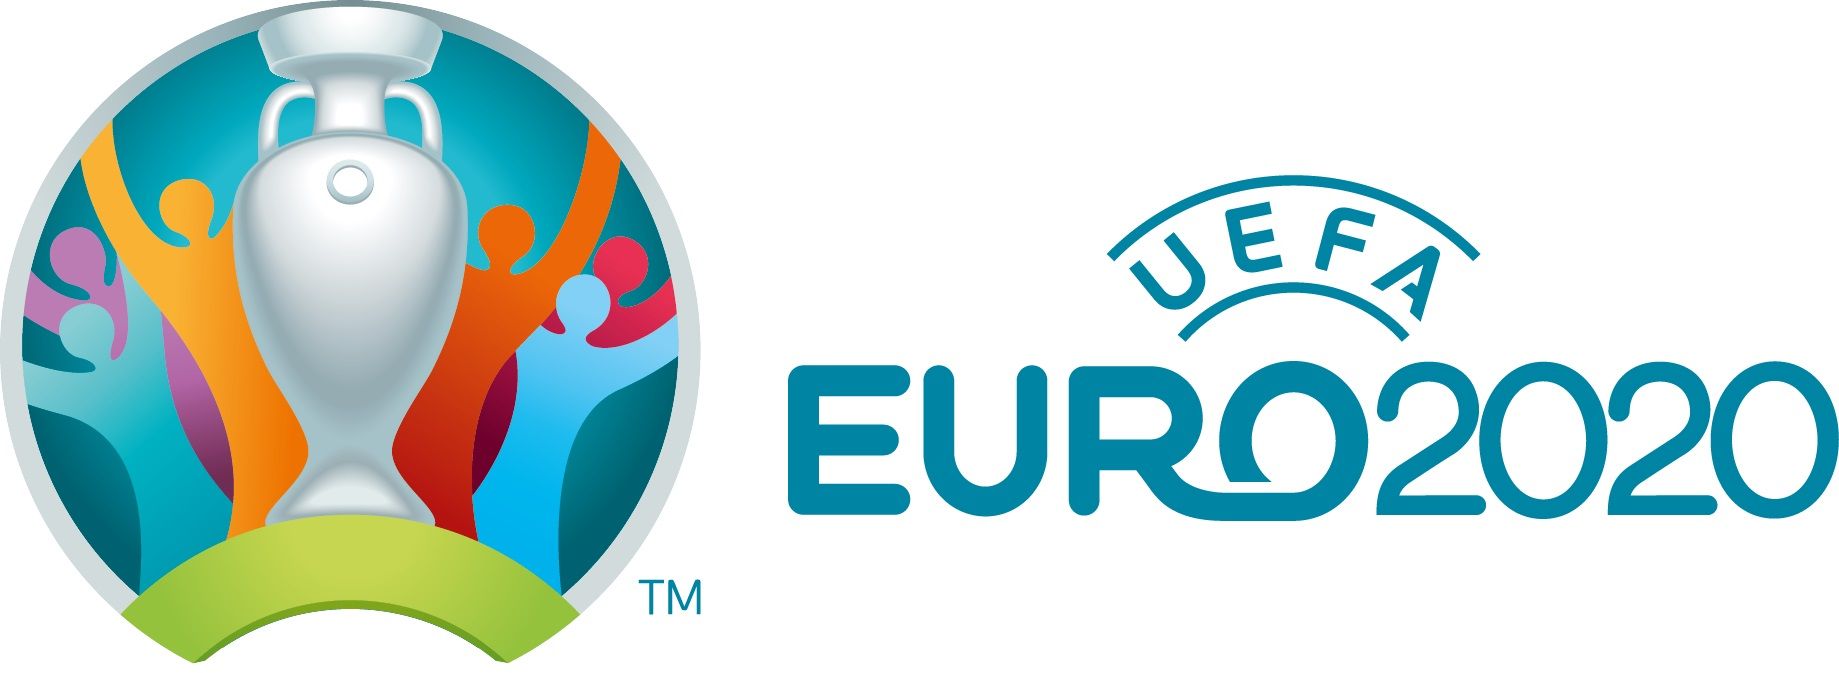 UEFA EURO 2020 India Telecast Rights